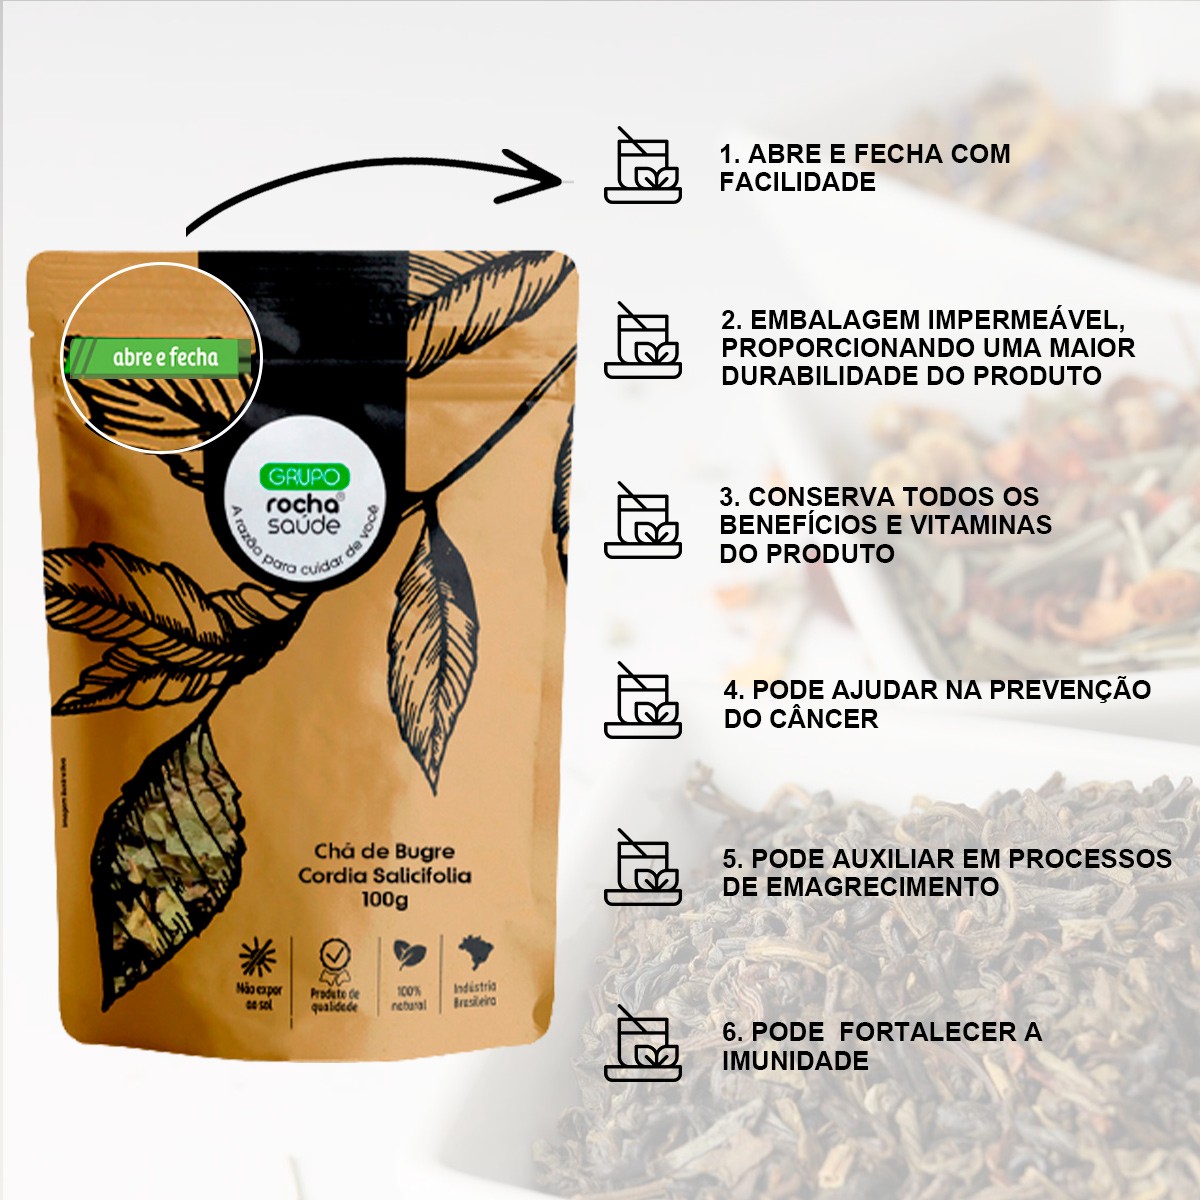 Chá de Bugre - Cordia Salicifolia - 100g